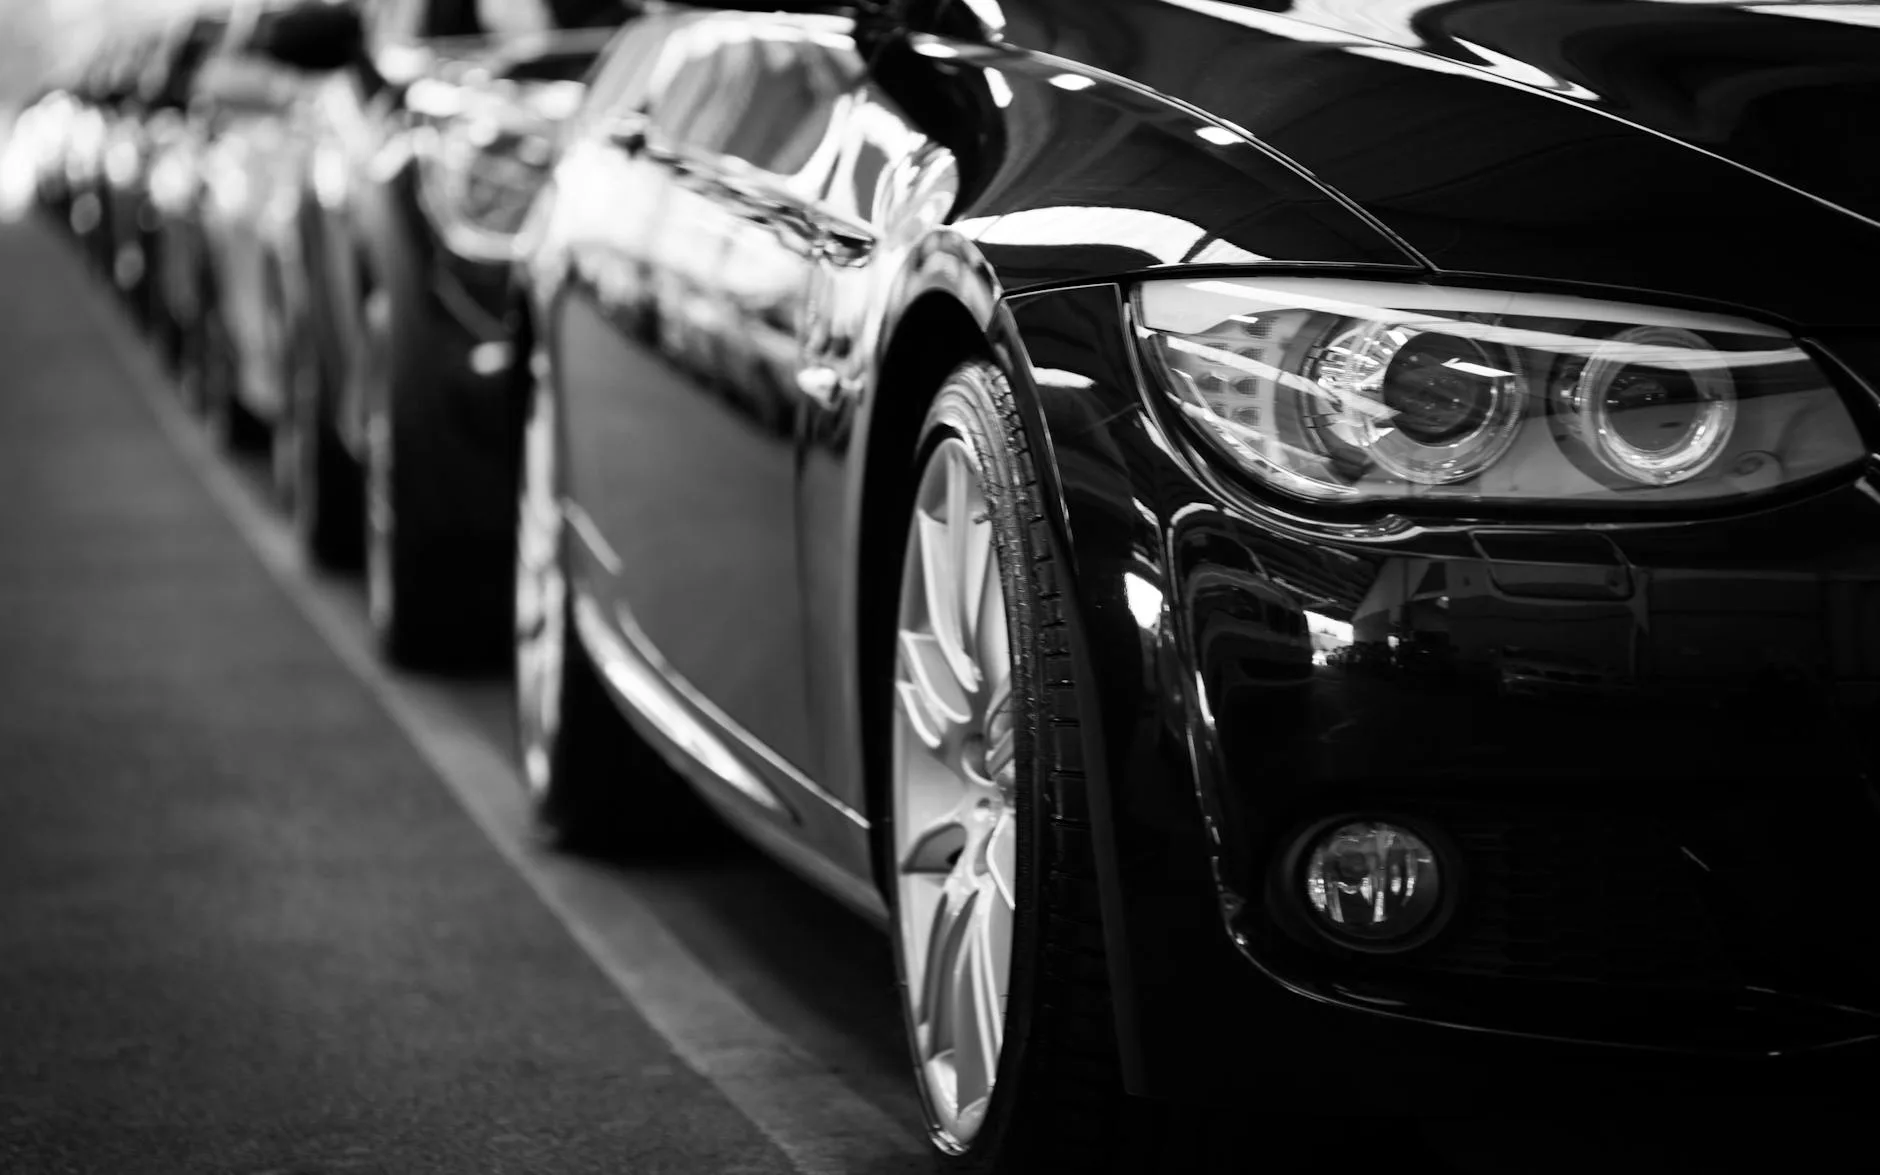 Used Car Market Trends for Dealerships